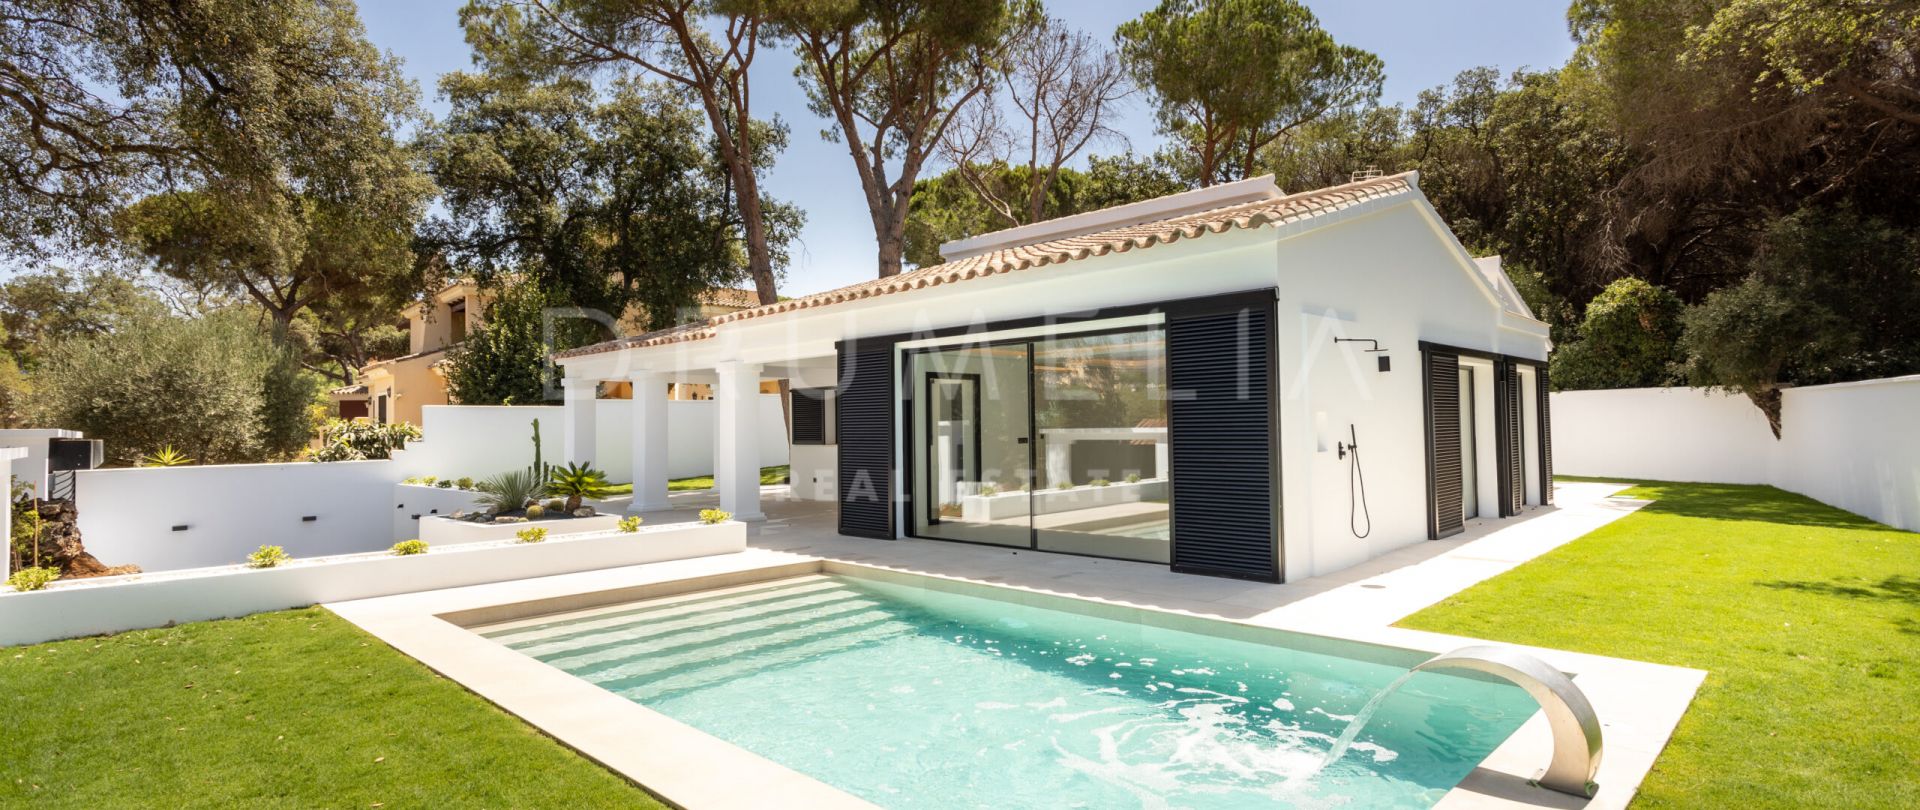 Charmante villa méditerranéenne de luxe près de la plage à Elviria, à l'est de Marbella.